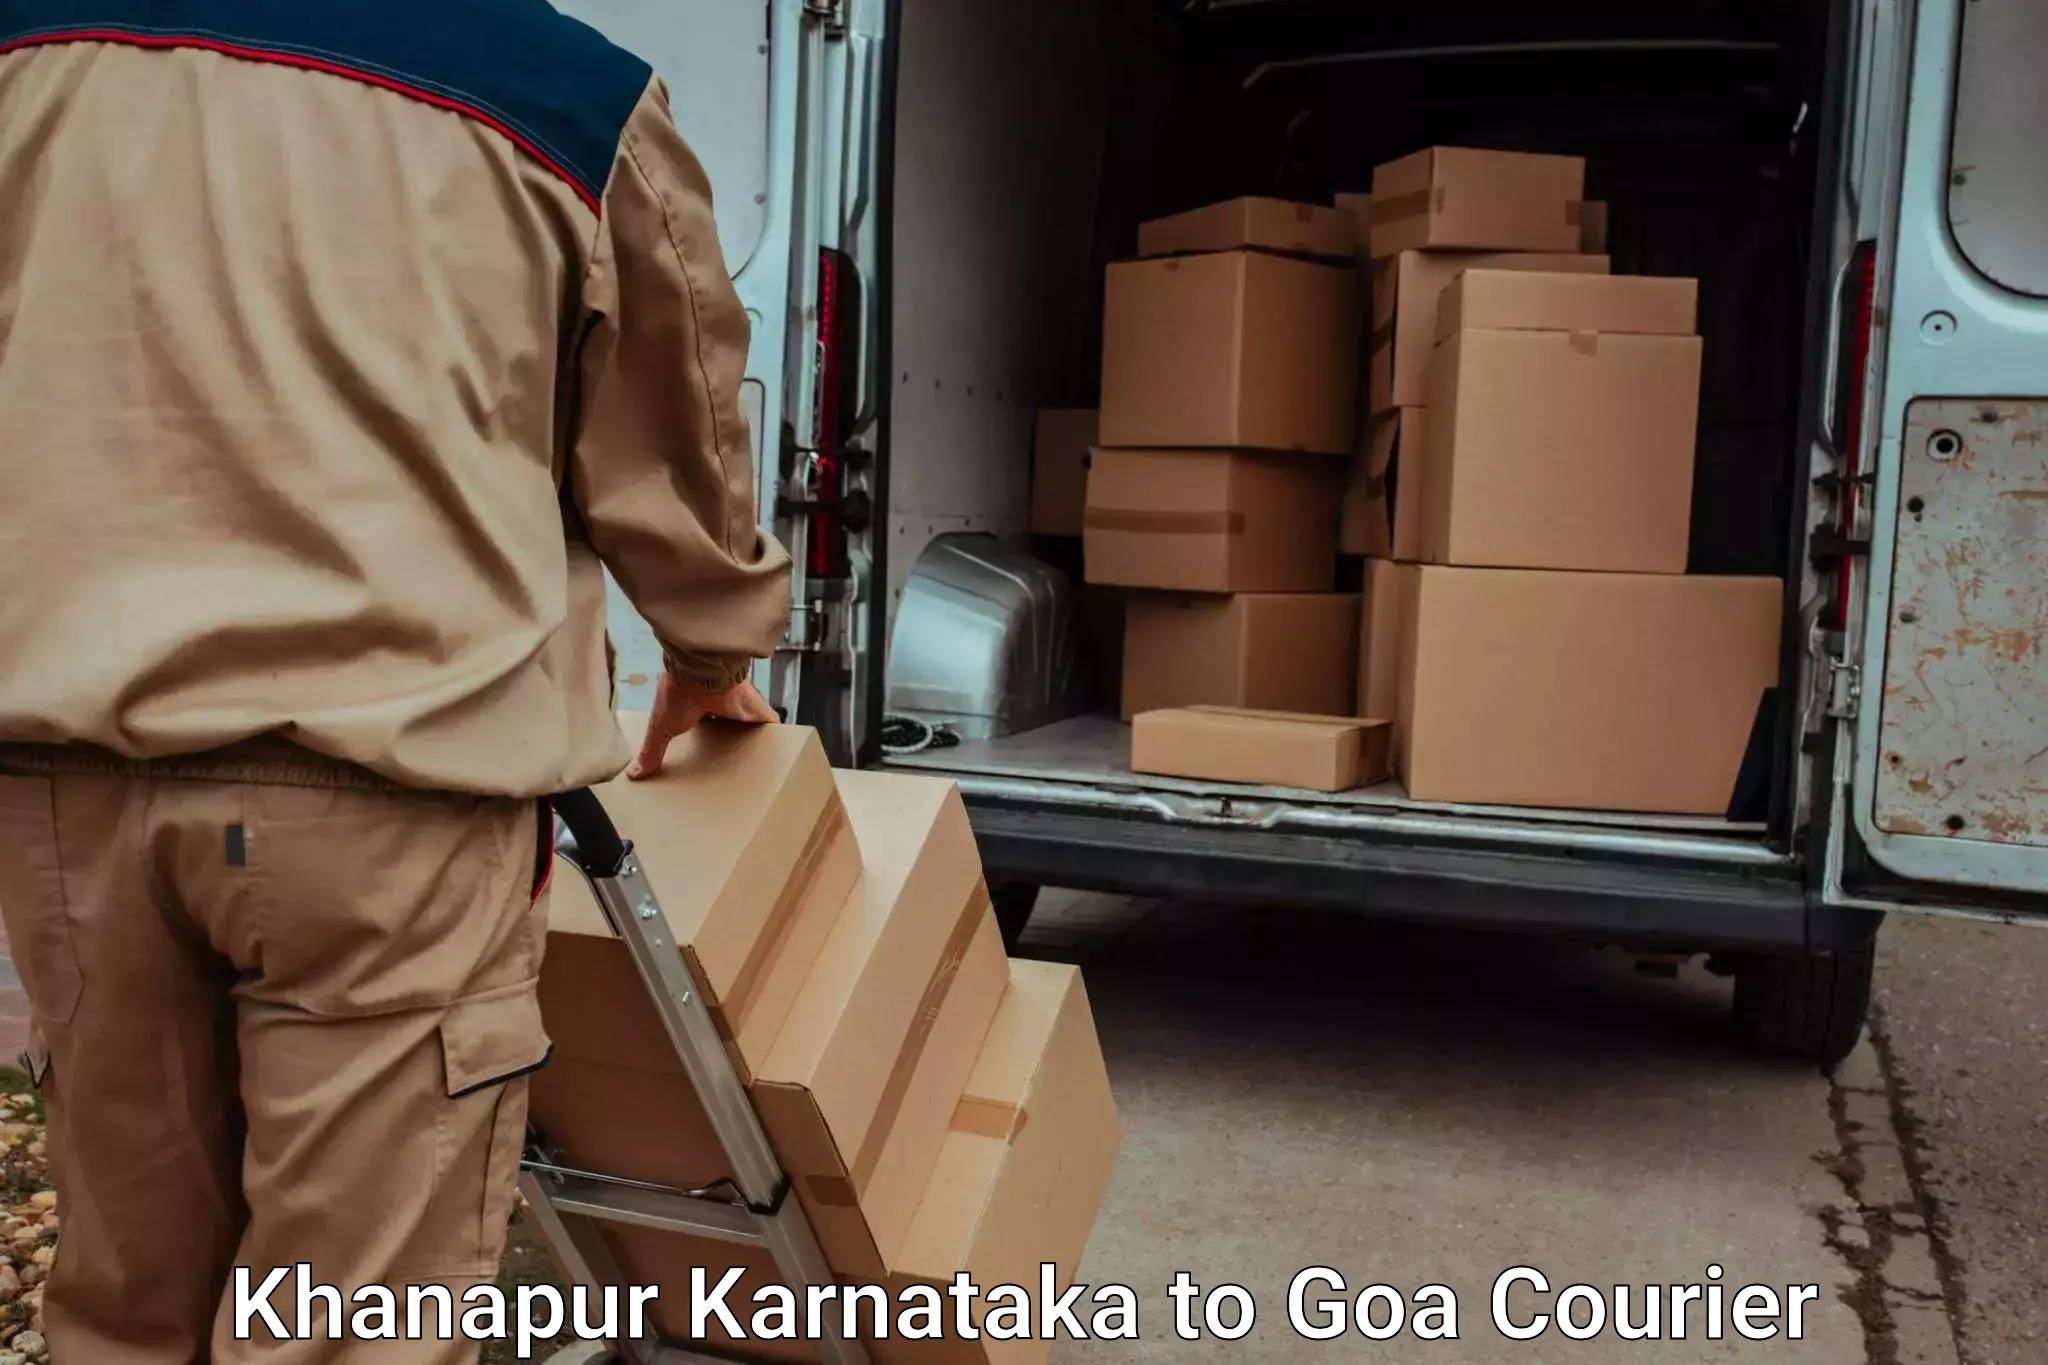 Baggage transport scheduler Khanapur Karnataka to Bardez